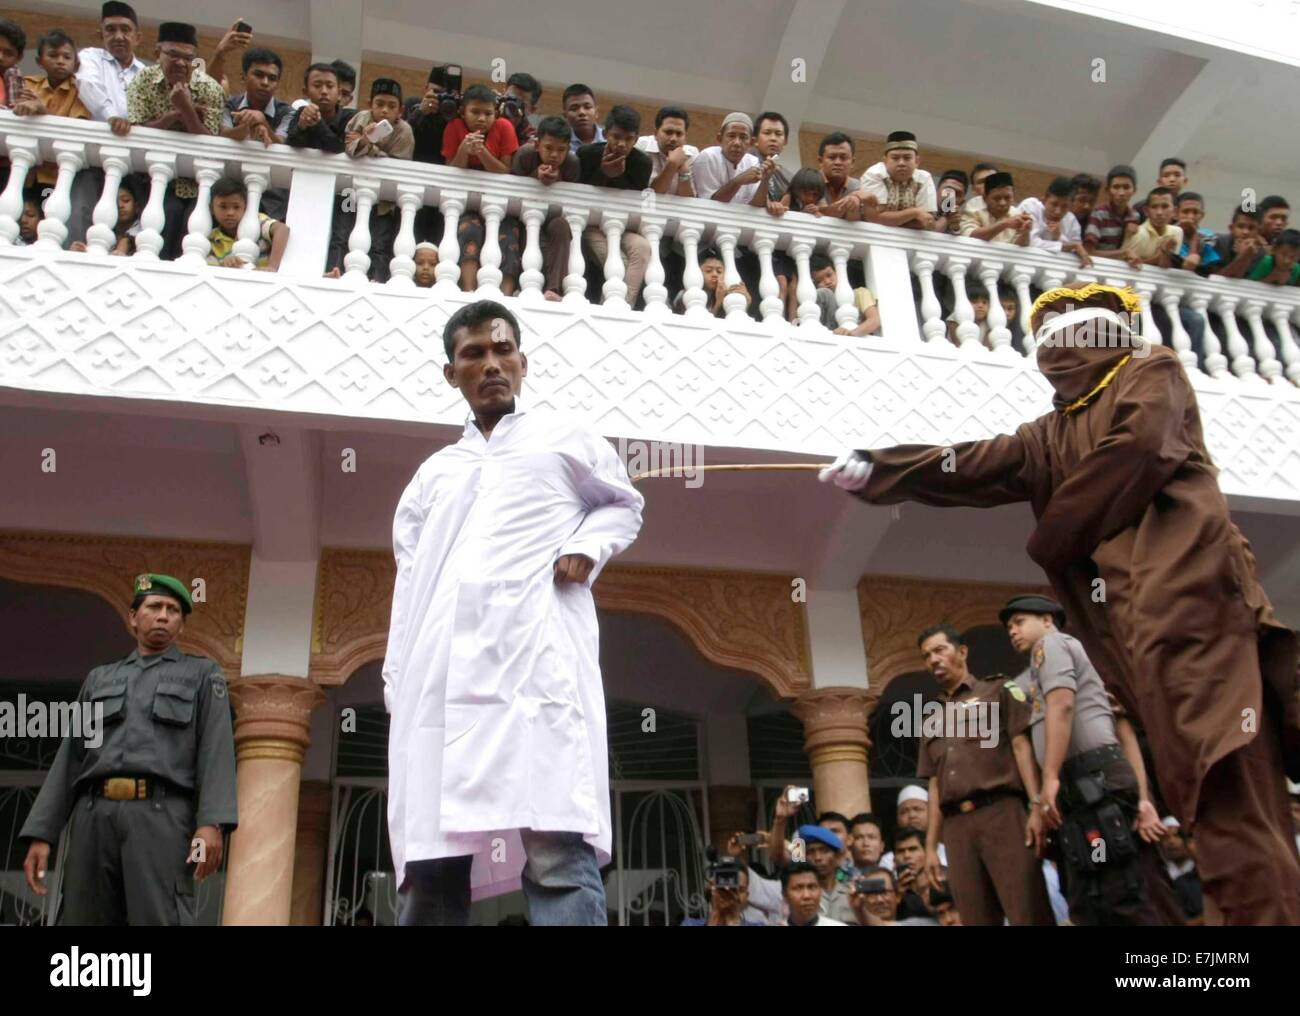 Aceh, Indonesia. 19 Settembre, 2014. Una legge della Sharia fruste ufficiale un uomo condannato per il gioco d'azzardo con una canna di rattan durante un pubblico originari nella provincia di Aceh, Indonesia, sul Sett. 19, 2014. L'amministrazione provinciale di Aceh, nel nord dell'isola indonesiana di Sumatra, ha approvato una legge chiamata 'Qanun Jinayat' implementata una versione della sharia islamica dal 2001 Credit: Xinhua/Alamy Live News Foto Stock